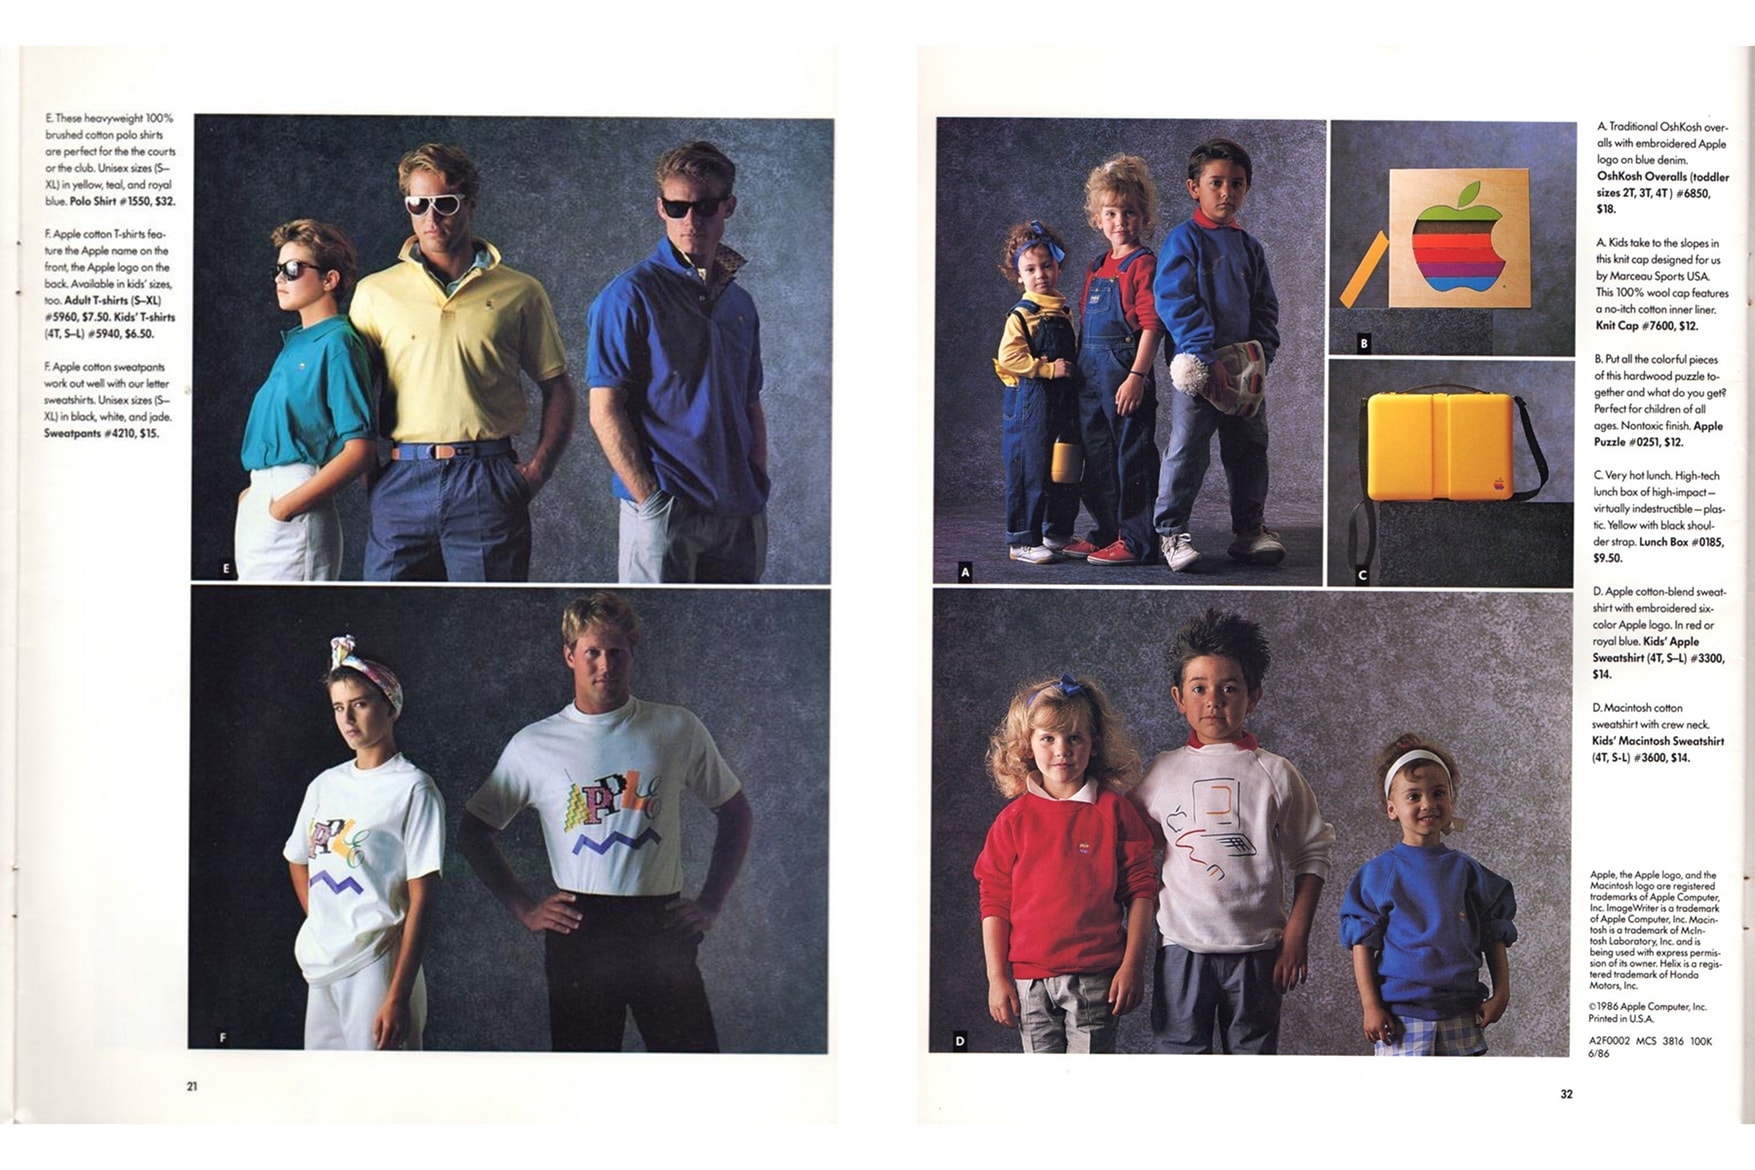 回顧 Apple 於 1986 年推出的服裝系列